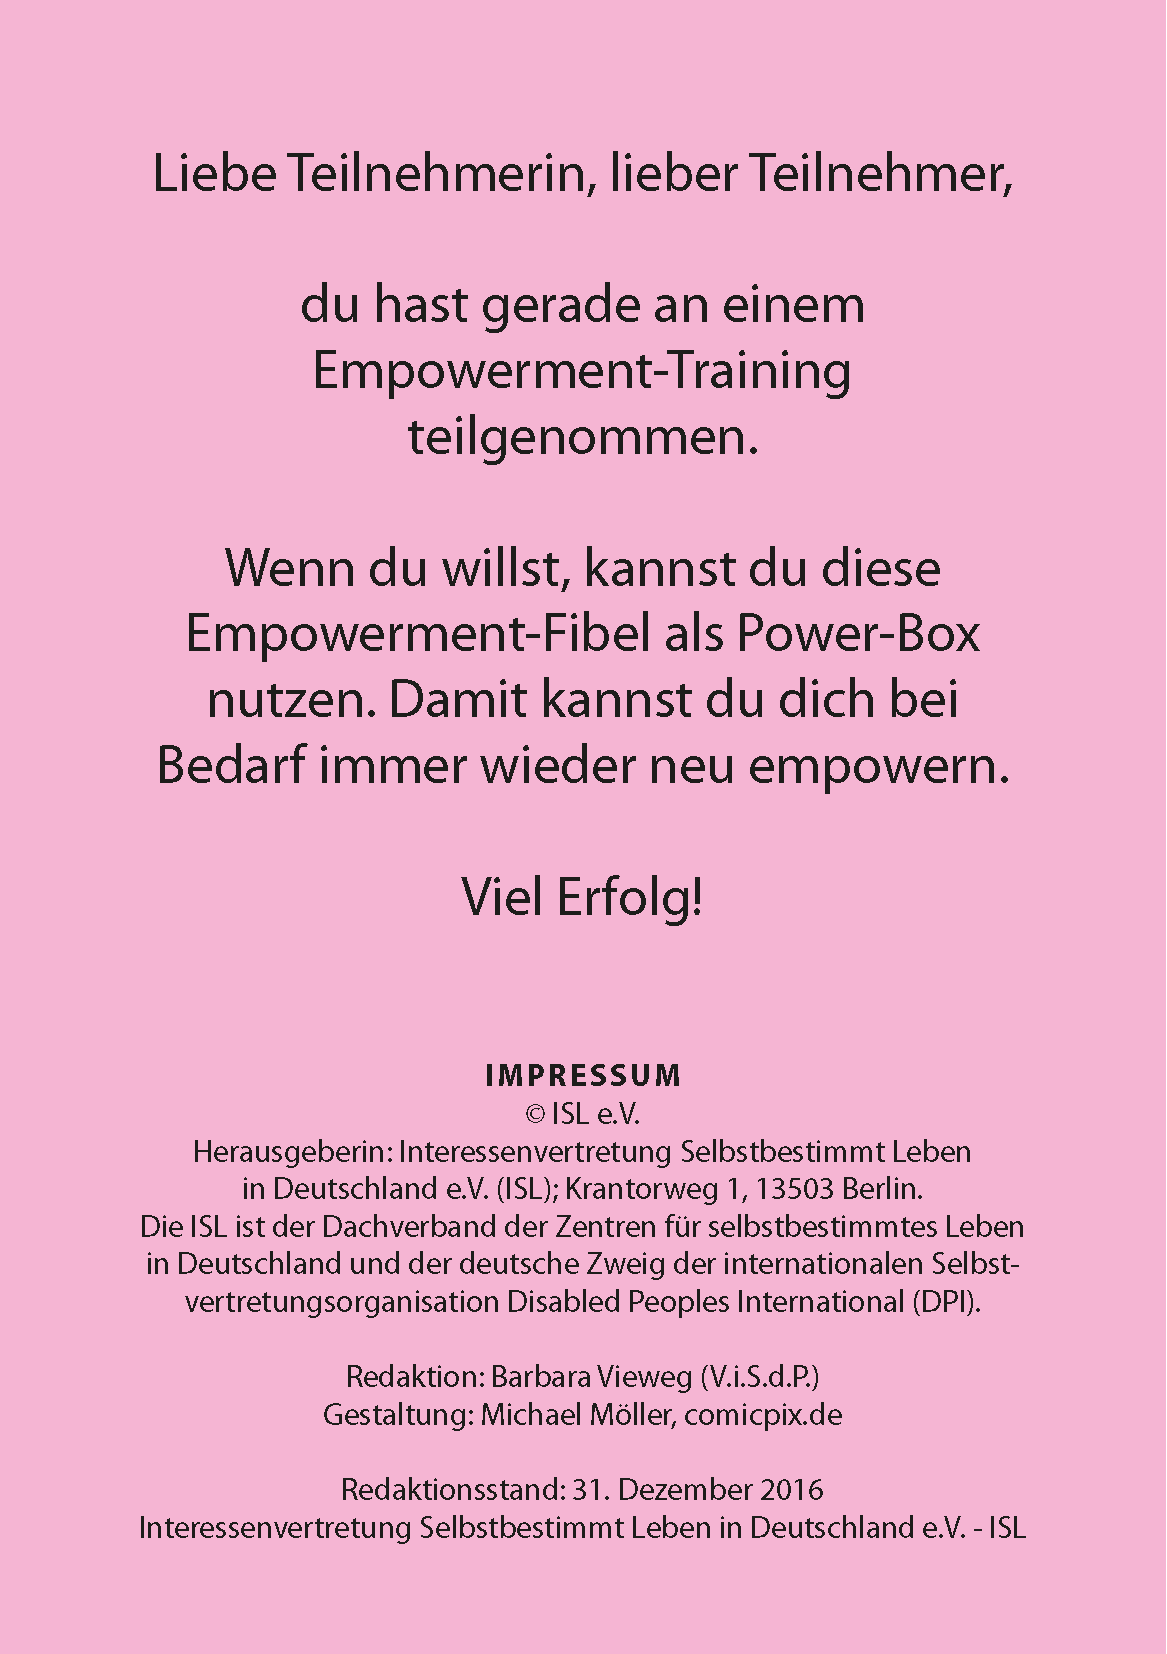 Seite 2 der Empowerment-Fibel